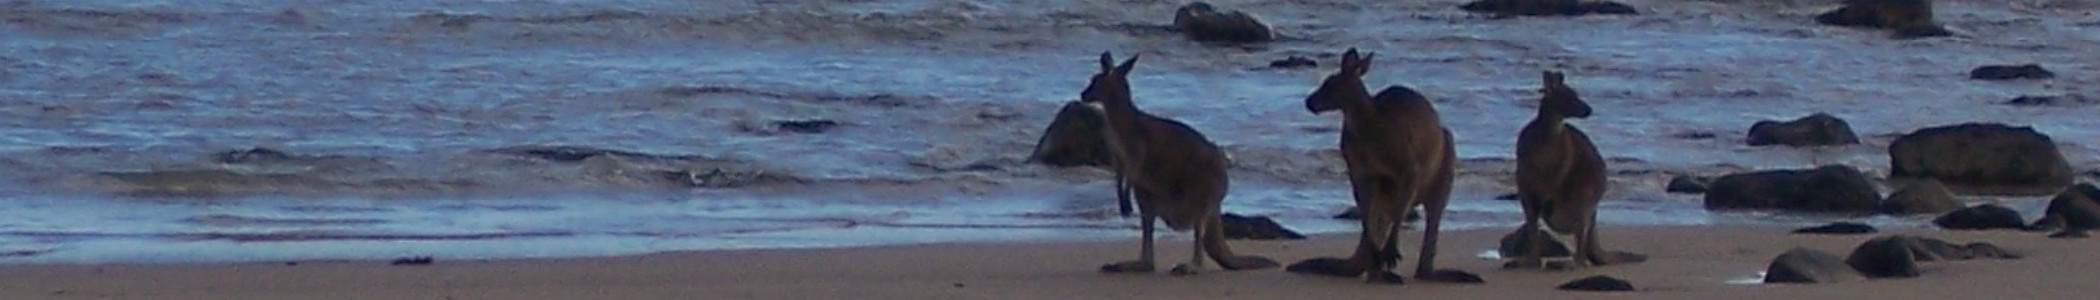 Australia_banner_Kangaroos_on_beach